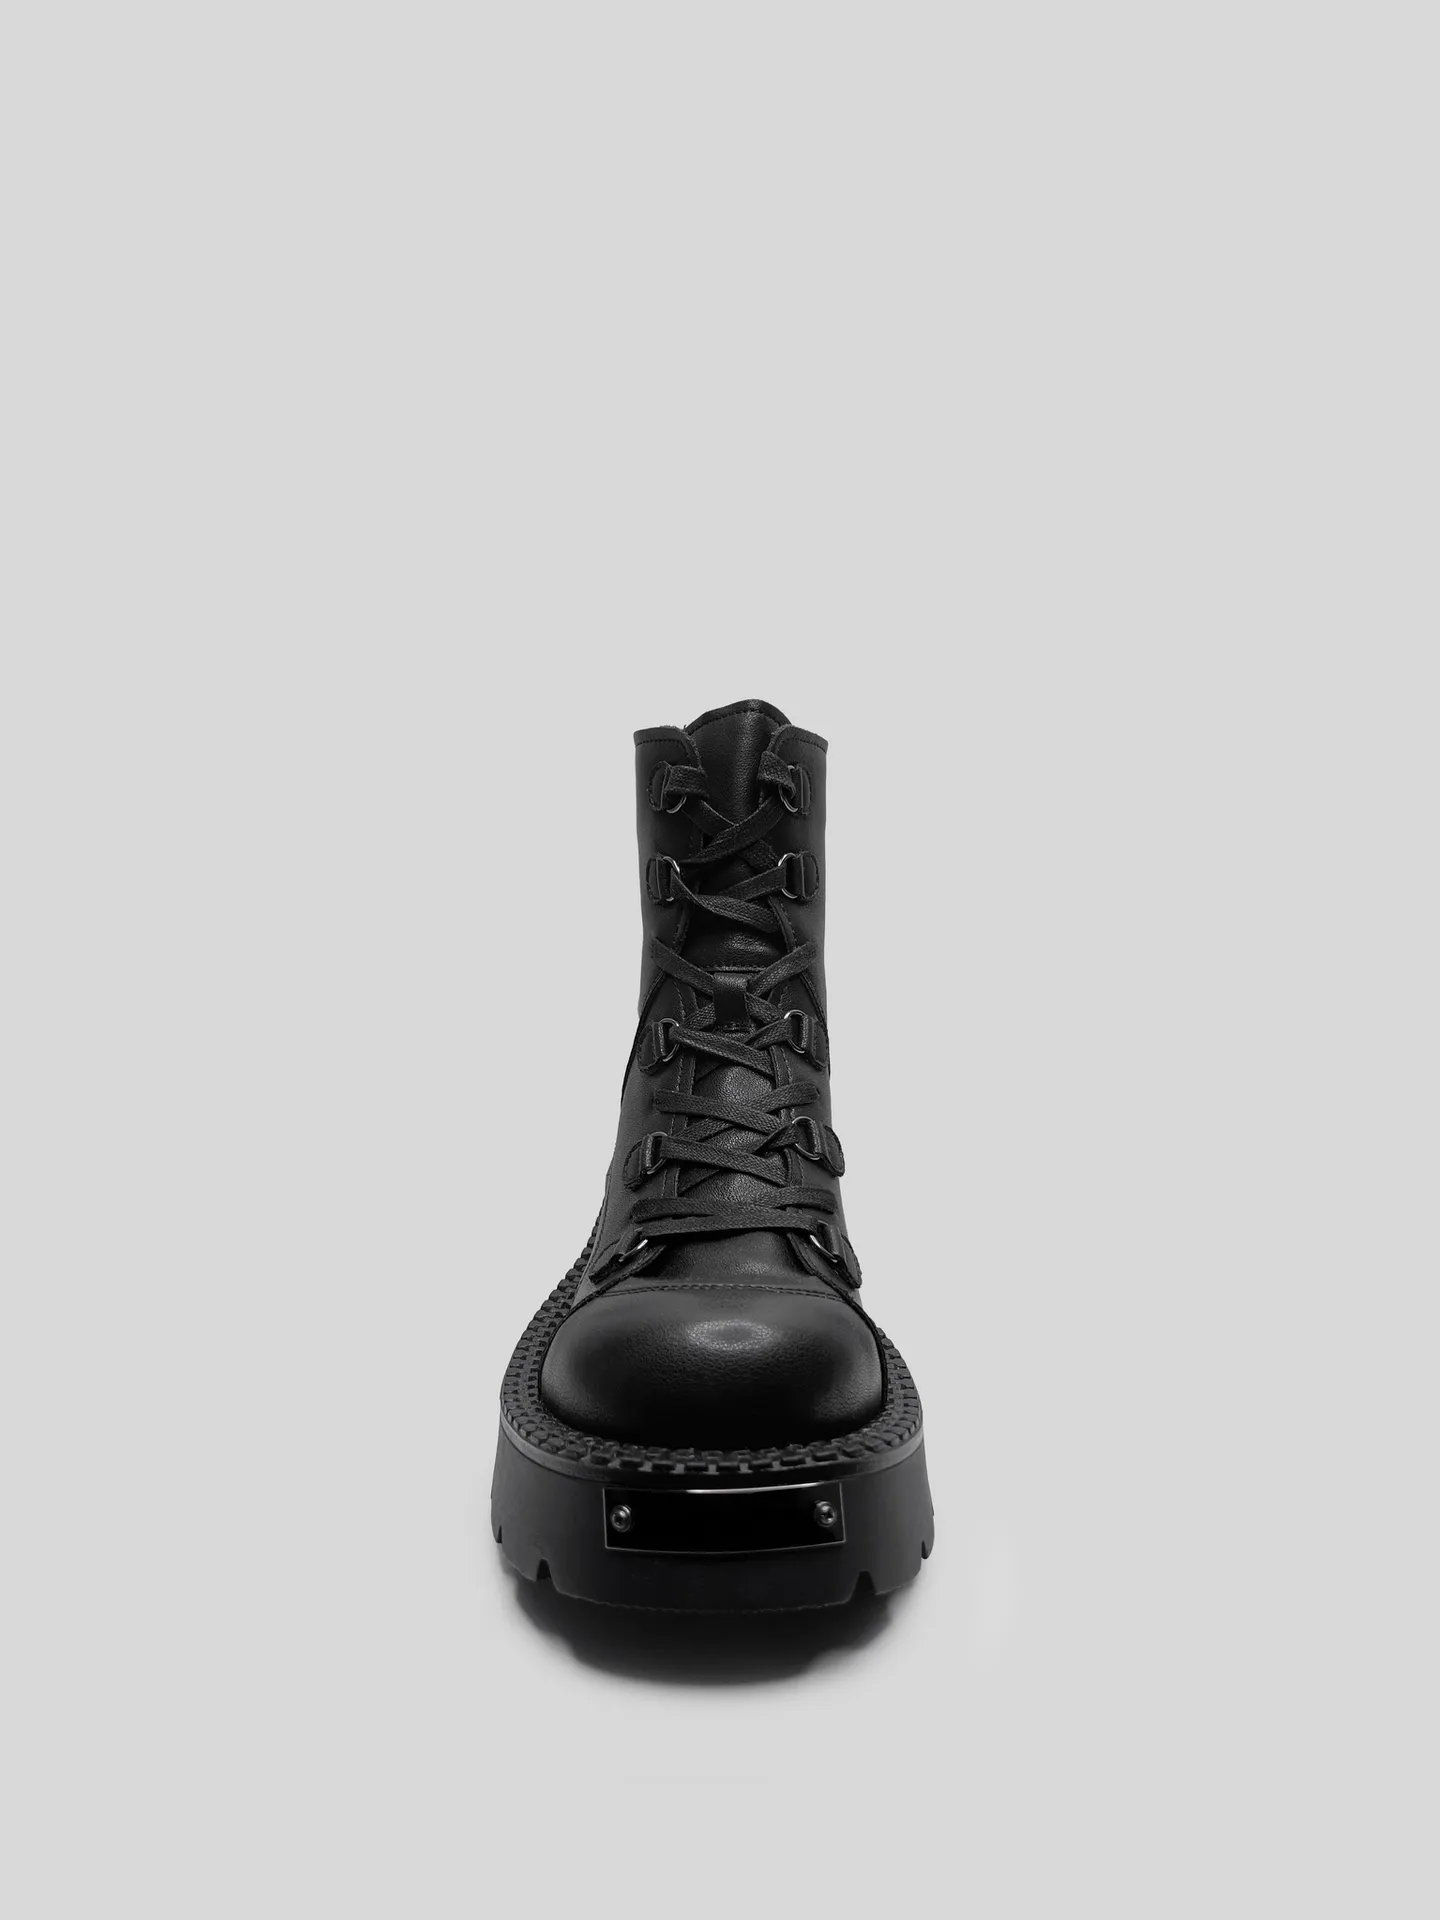 Ботинки Egga QXP523-1 на молнии сзади и шнуровкой спереди с металлическими вставкаминедорого